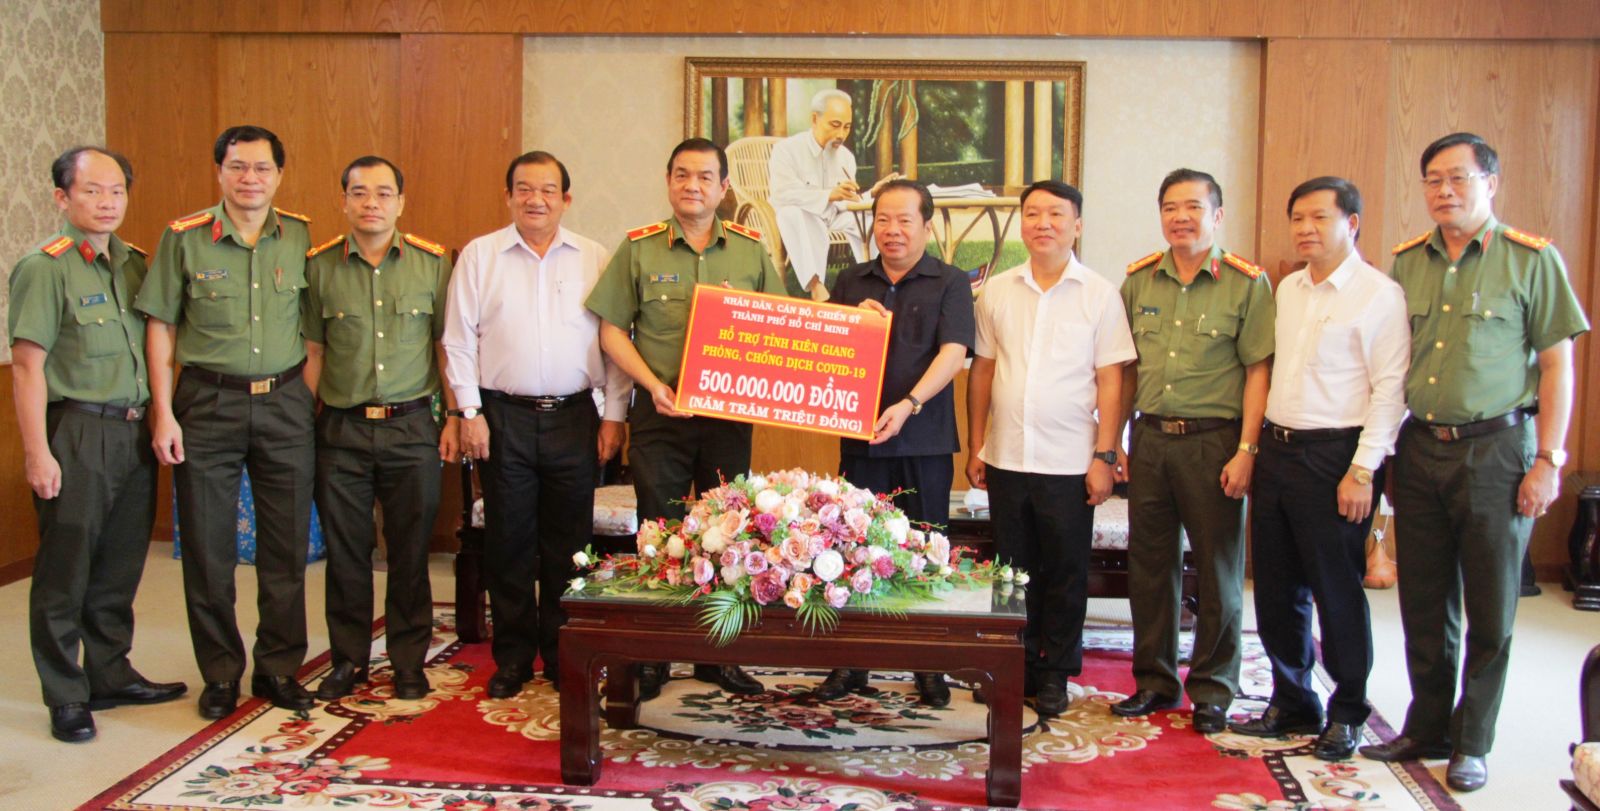 Thiếu tướng Lê Hồng Nam thay mặt đoàn công tác Thành ủy trao tặng 500 triệu đồng hỗ trợ tỉnh Kiên Giang phòng, chống dịch Covid-19